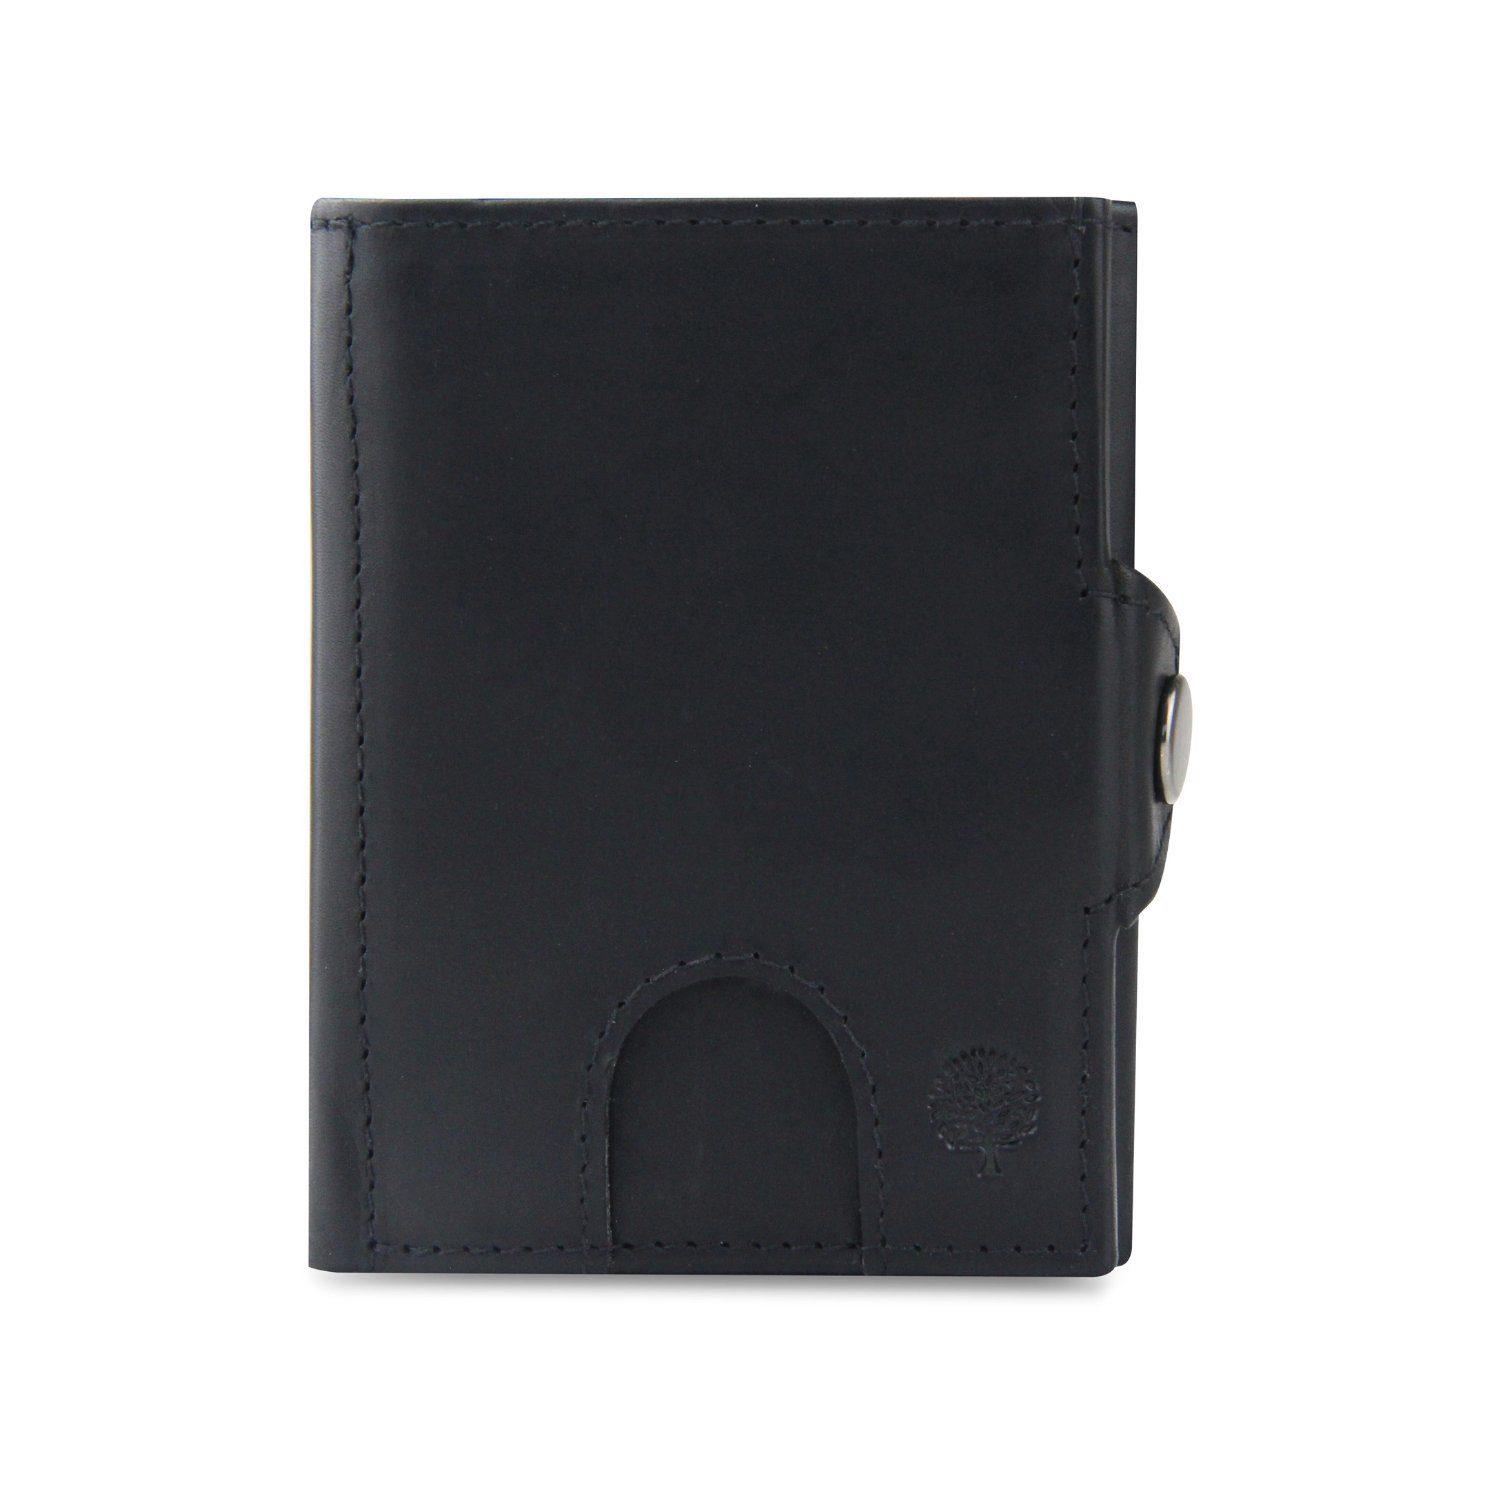 Frentree Mini Geldbörse Slim Wallet mit RFID-Schutz - Geldbörse aus echtem Leder - Mini, Geldbeutel mit Münzfach - Echtleder Portemonnaie Kartenetui Klein Schwarz Glattleder